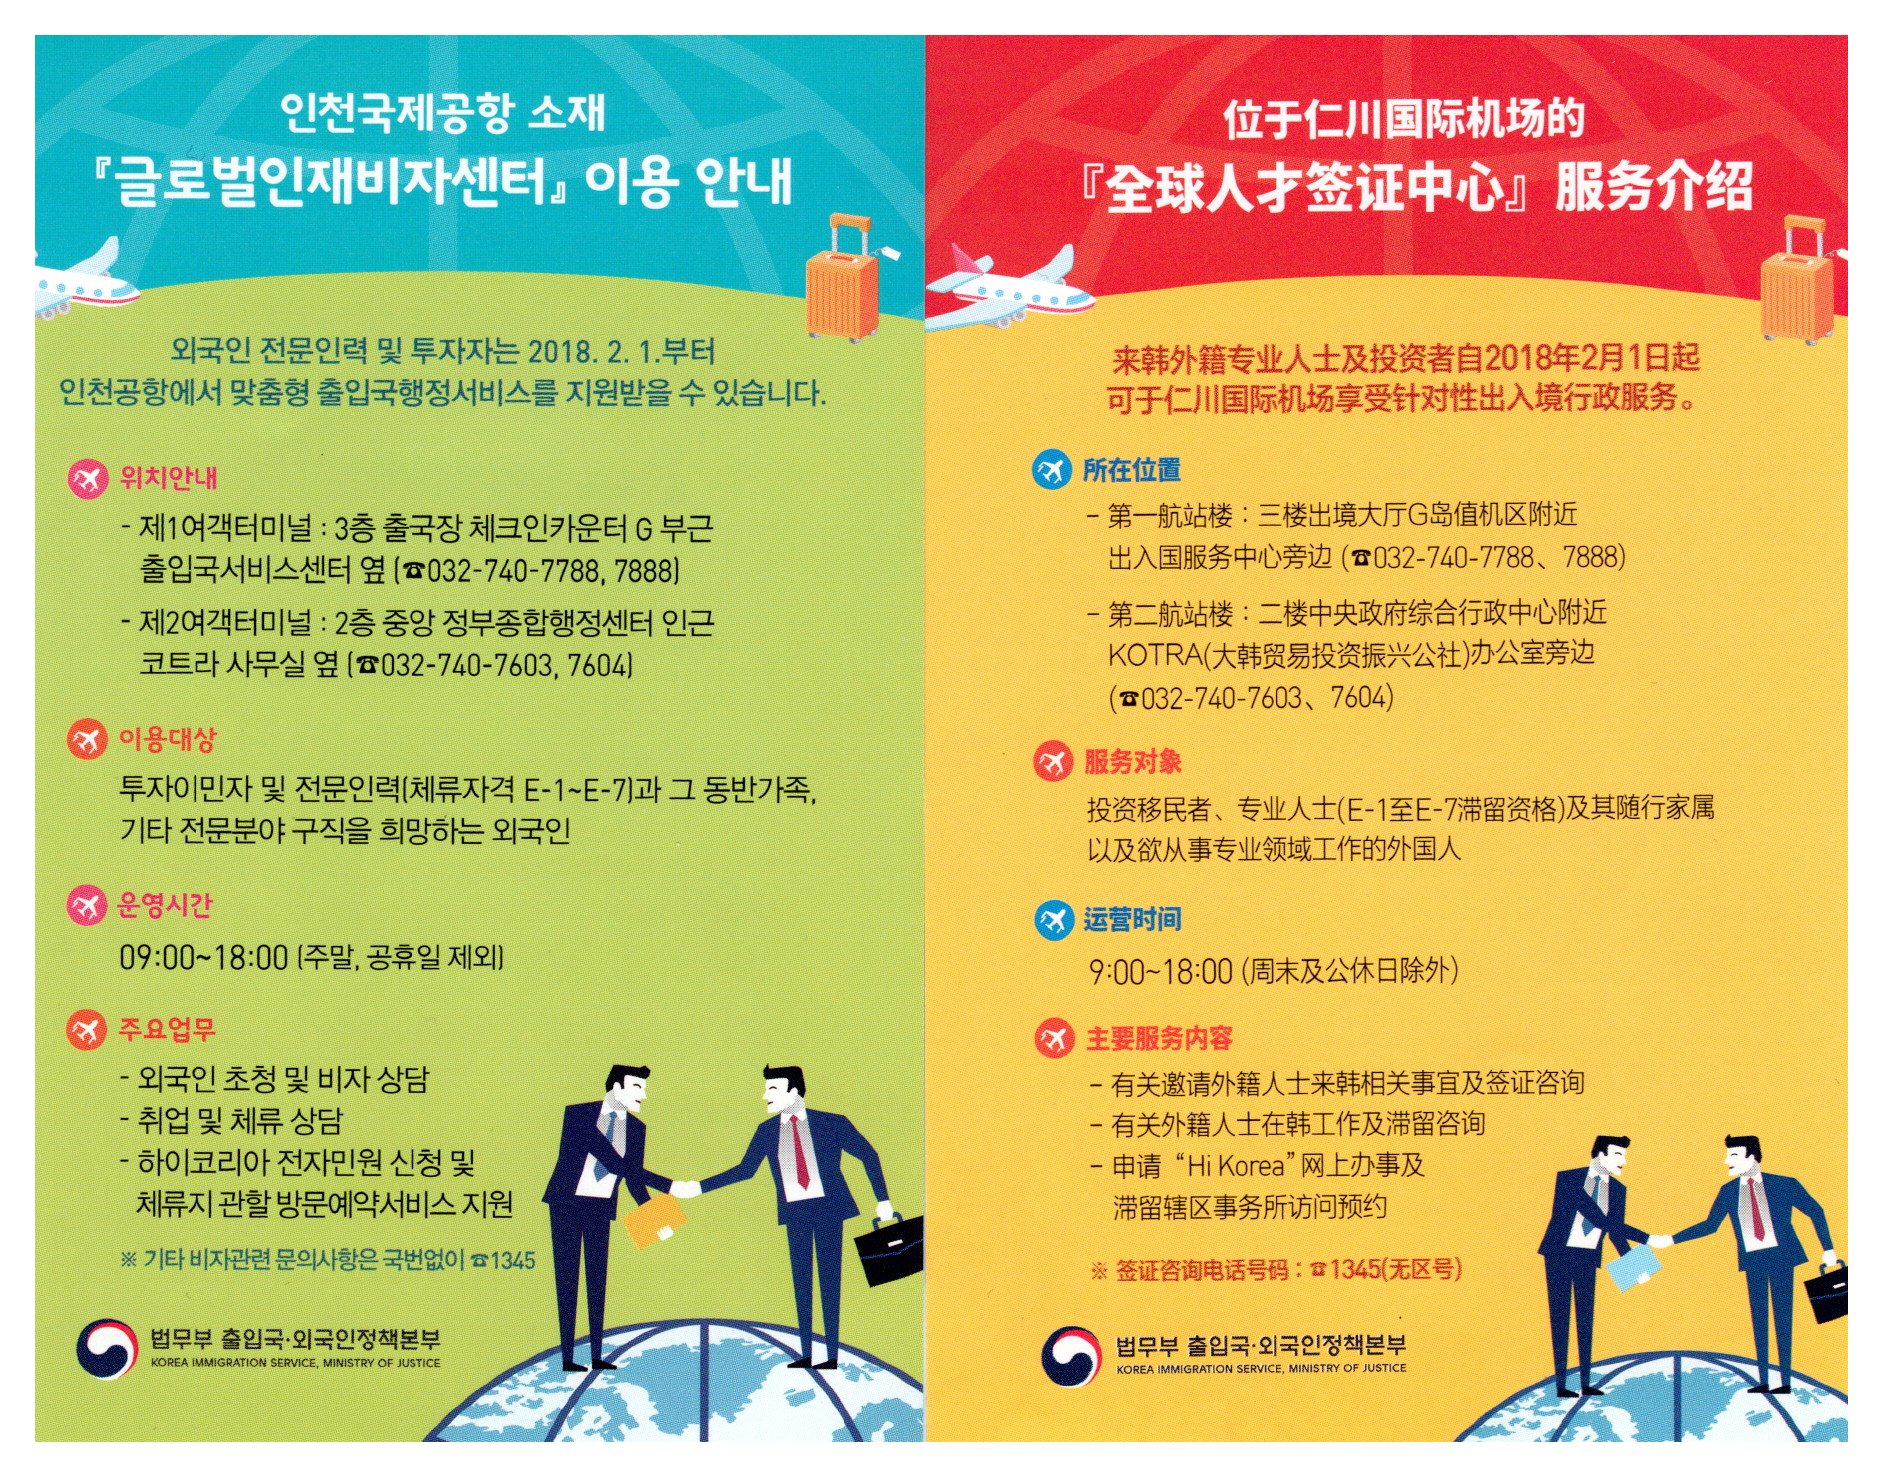 인천공항 글로벌인재비자센터 업무안내